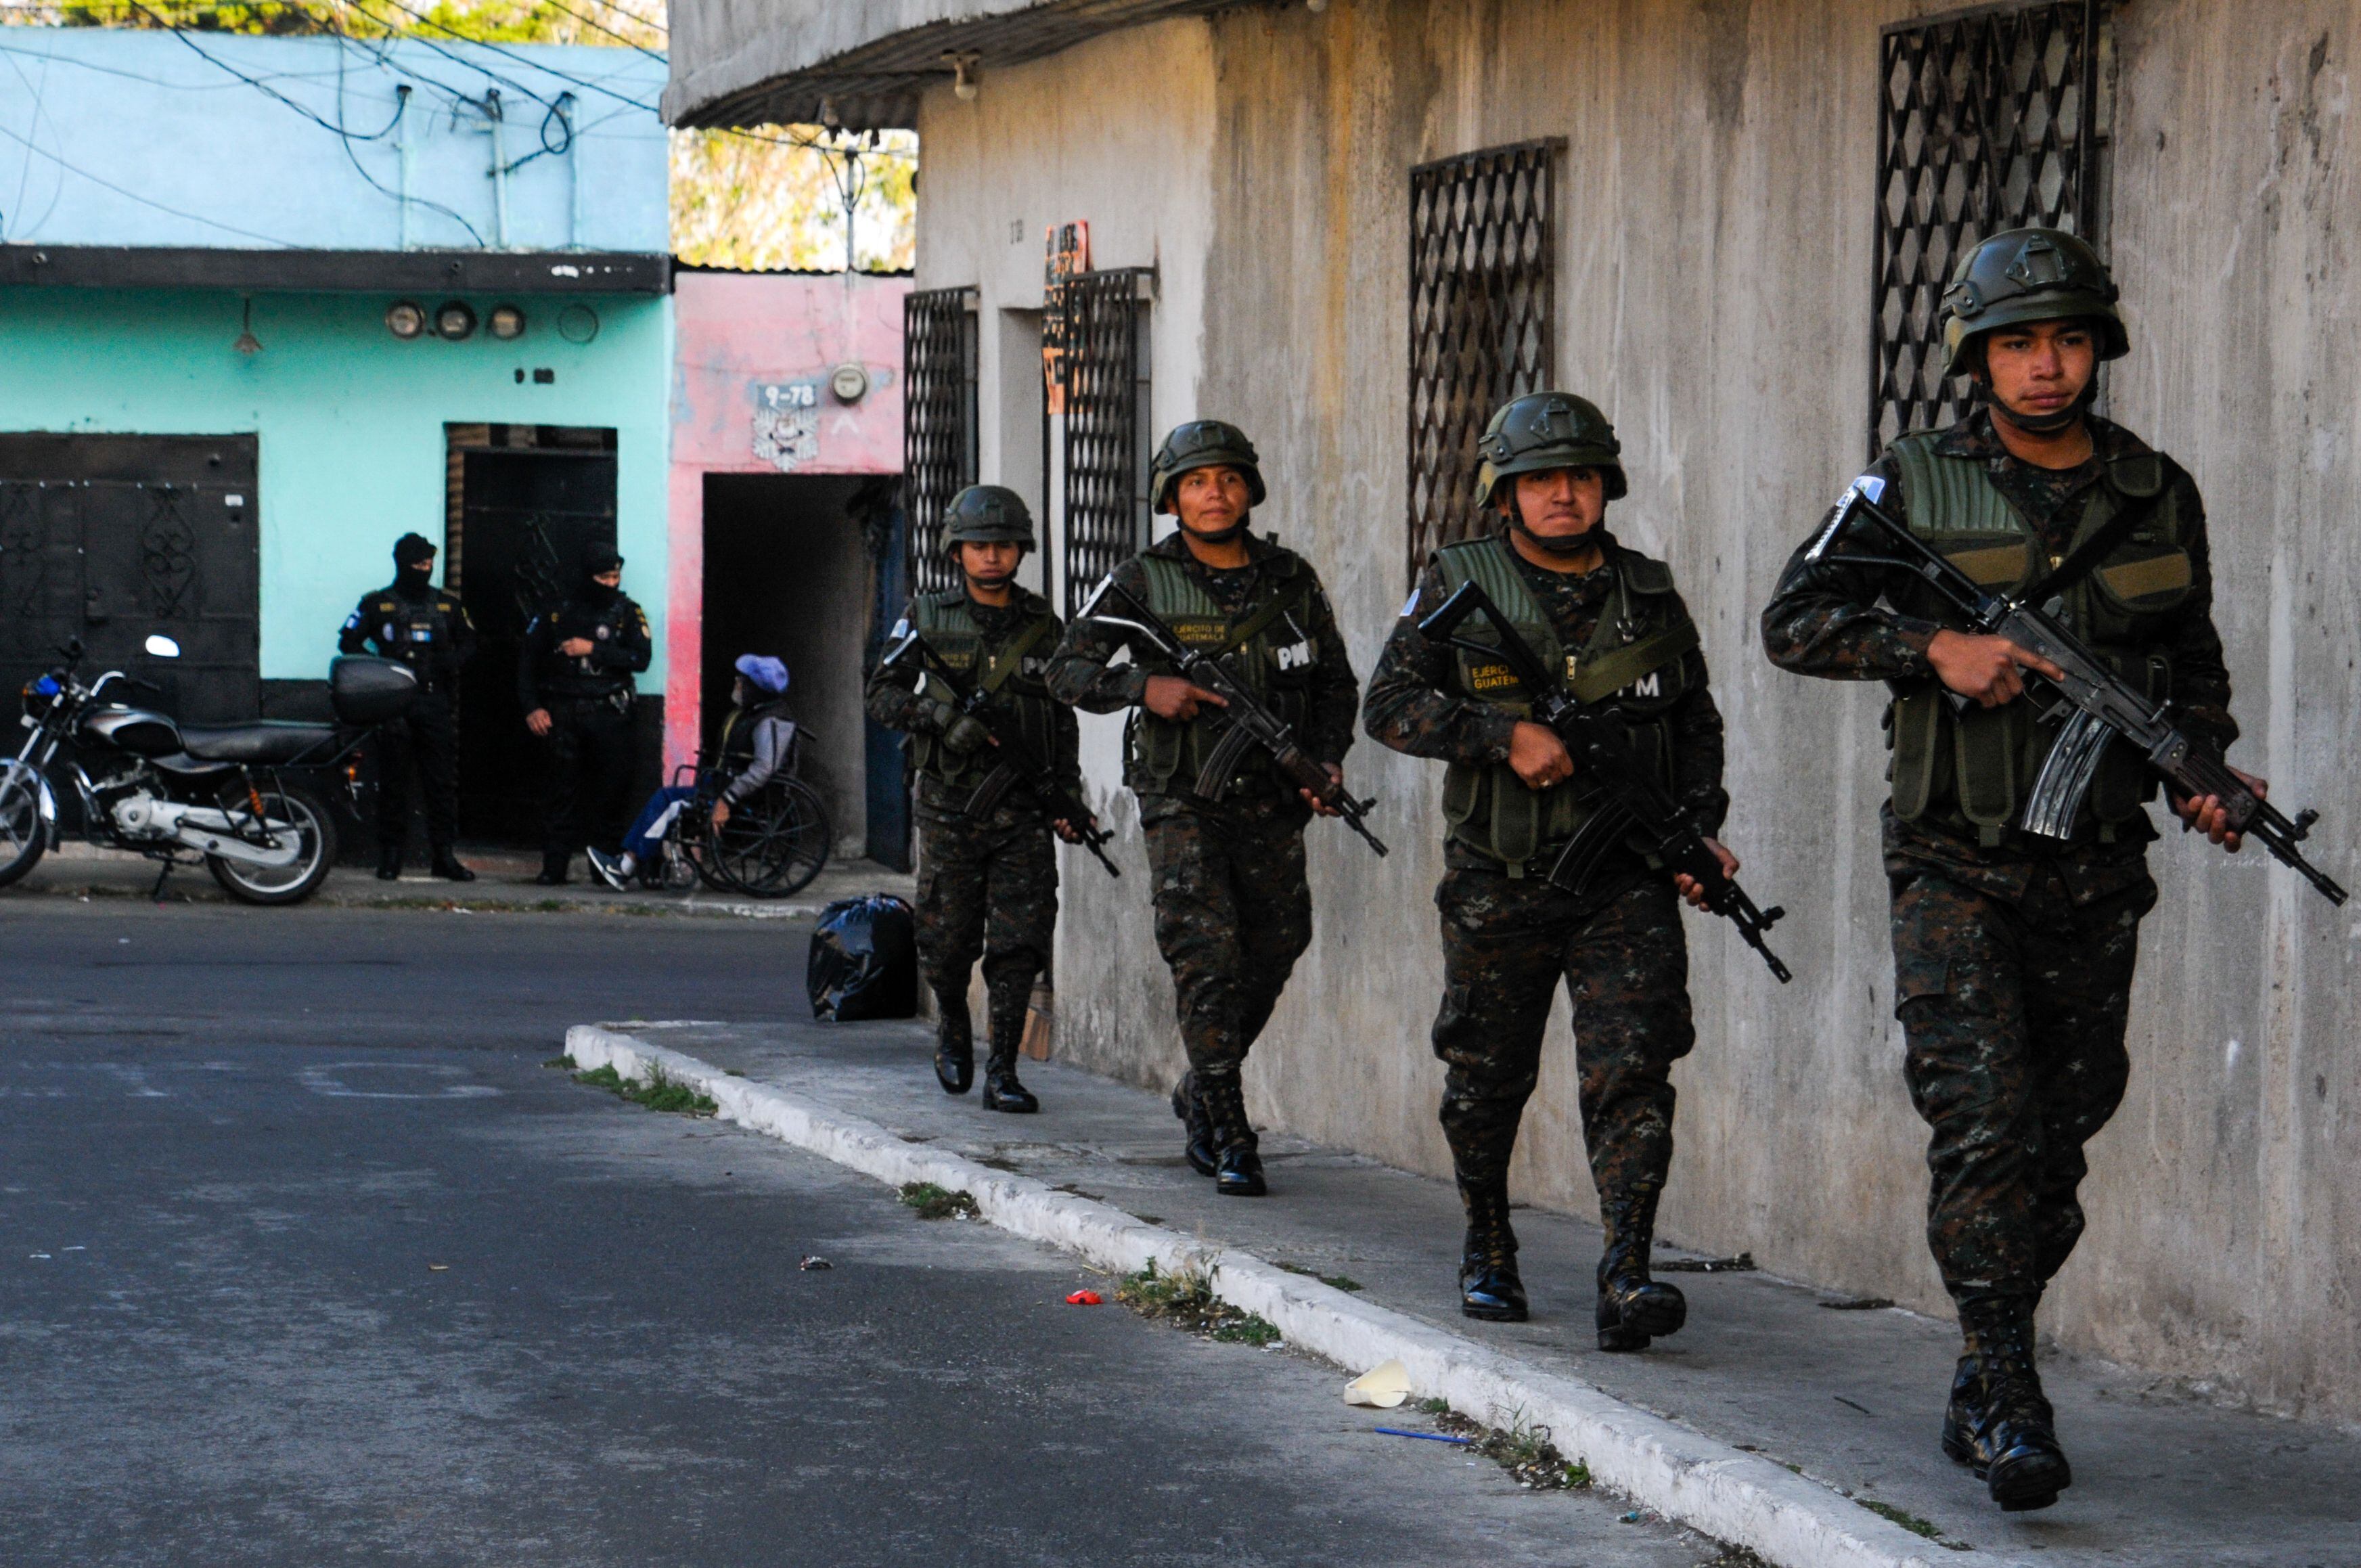 México y Guatemala unieron fuerzas para vigilar la frontera que comparten. Participan más de 5,000 soldados guatemaltecos, 500 agentes de la Policía Nacional Civil guatemalteca.